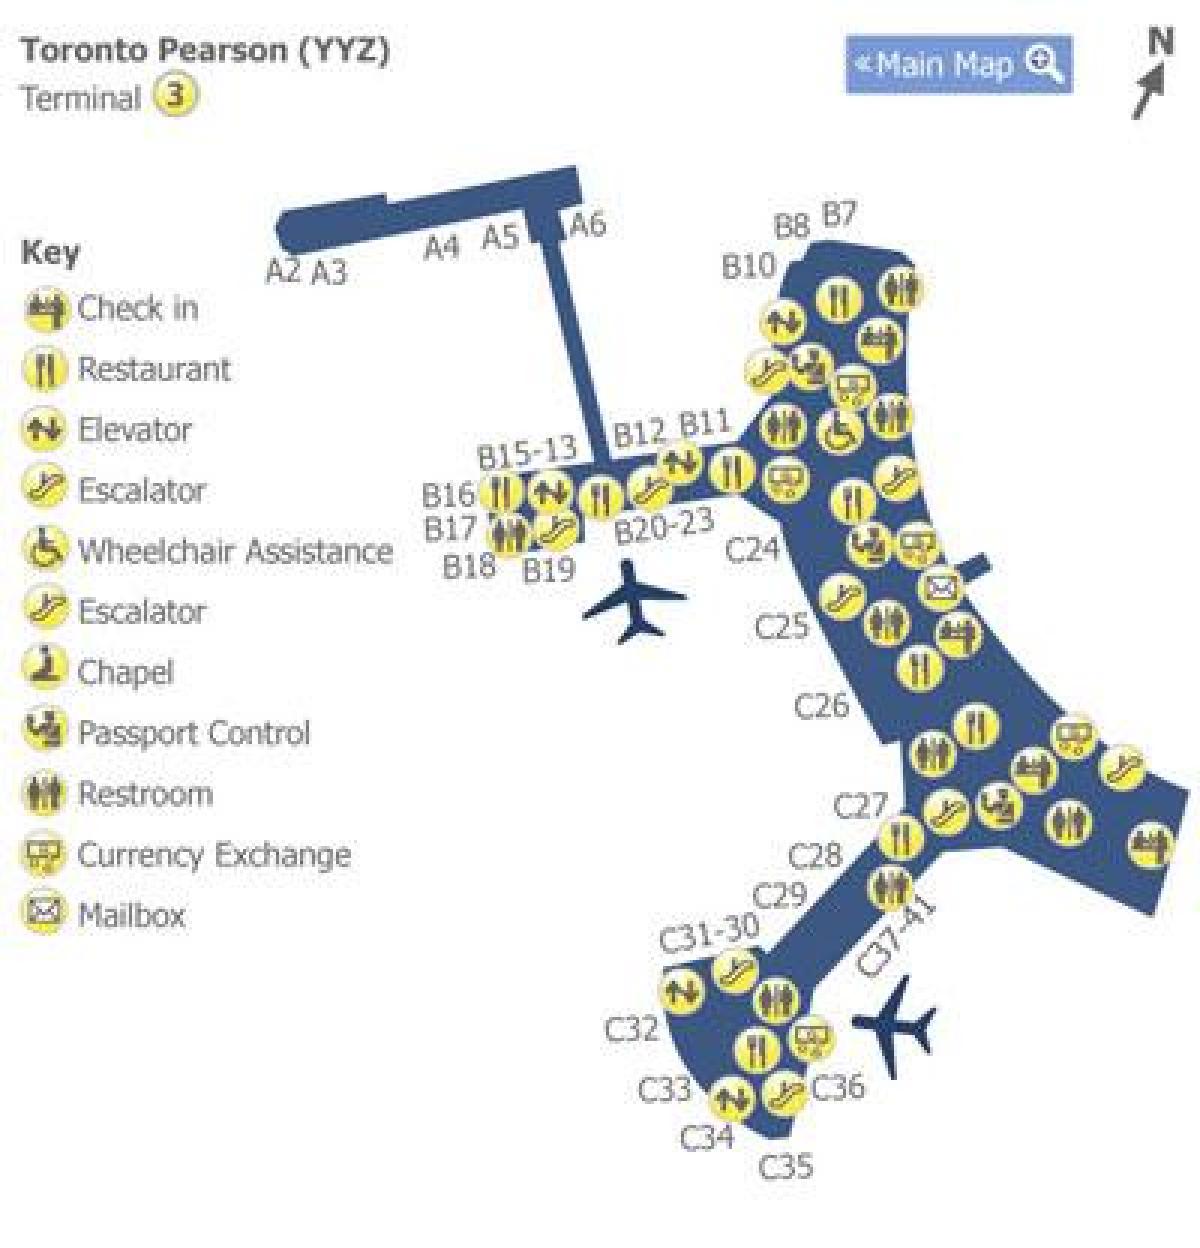 Mapa de Toronto Pearson airport terminal 3